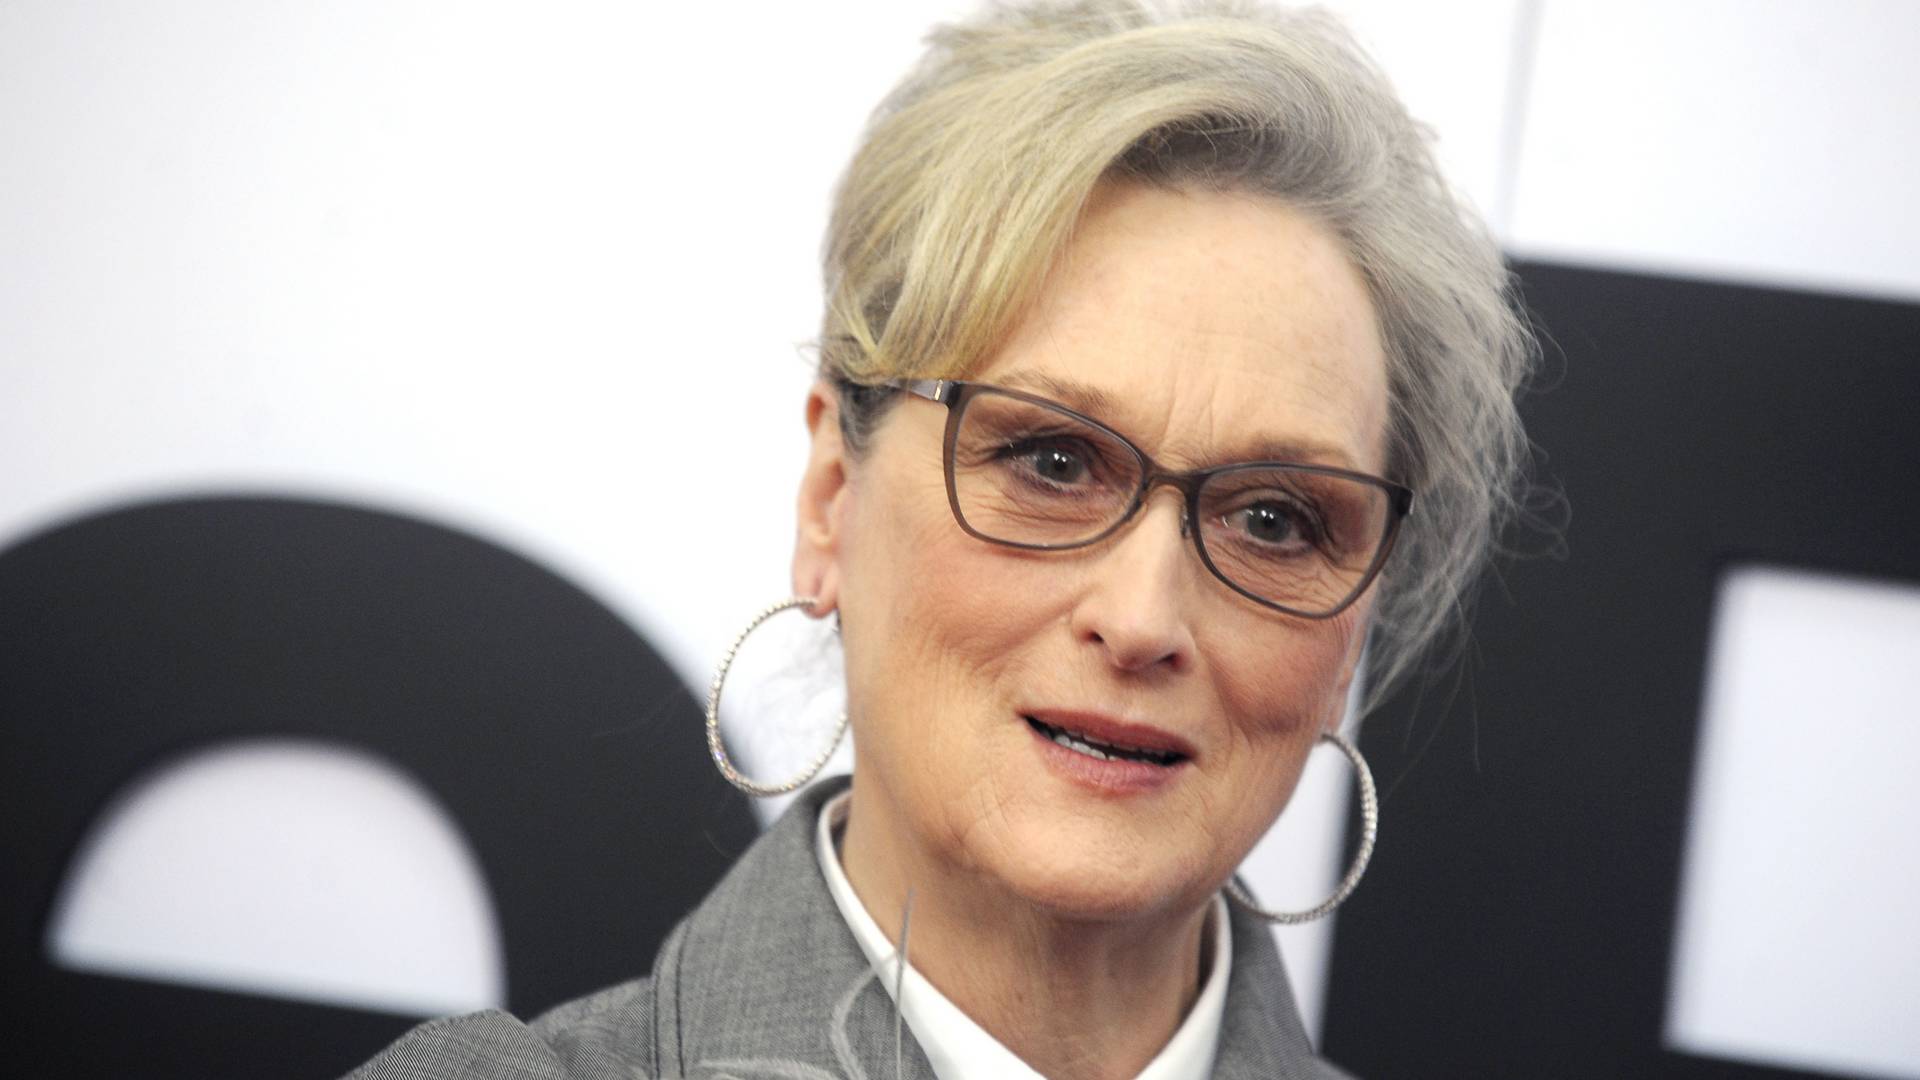 Kínos plakátok jelentek meg Meryl Streep-ről